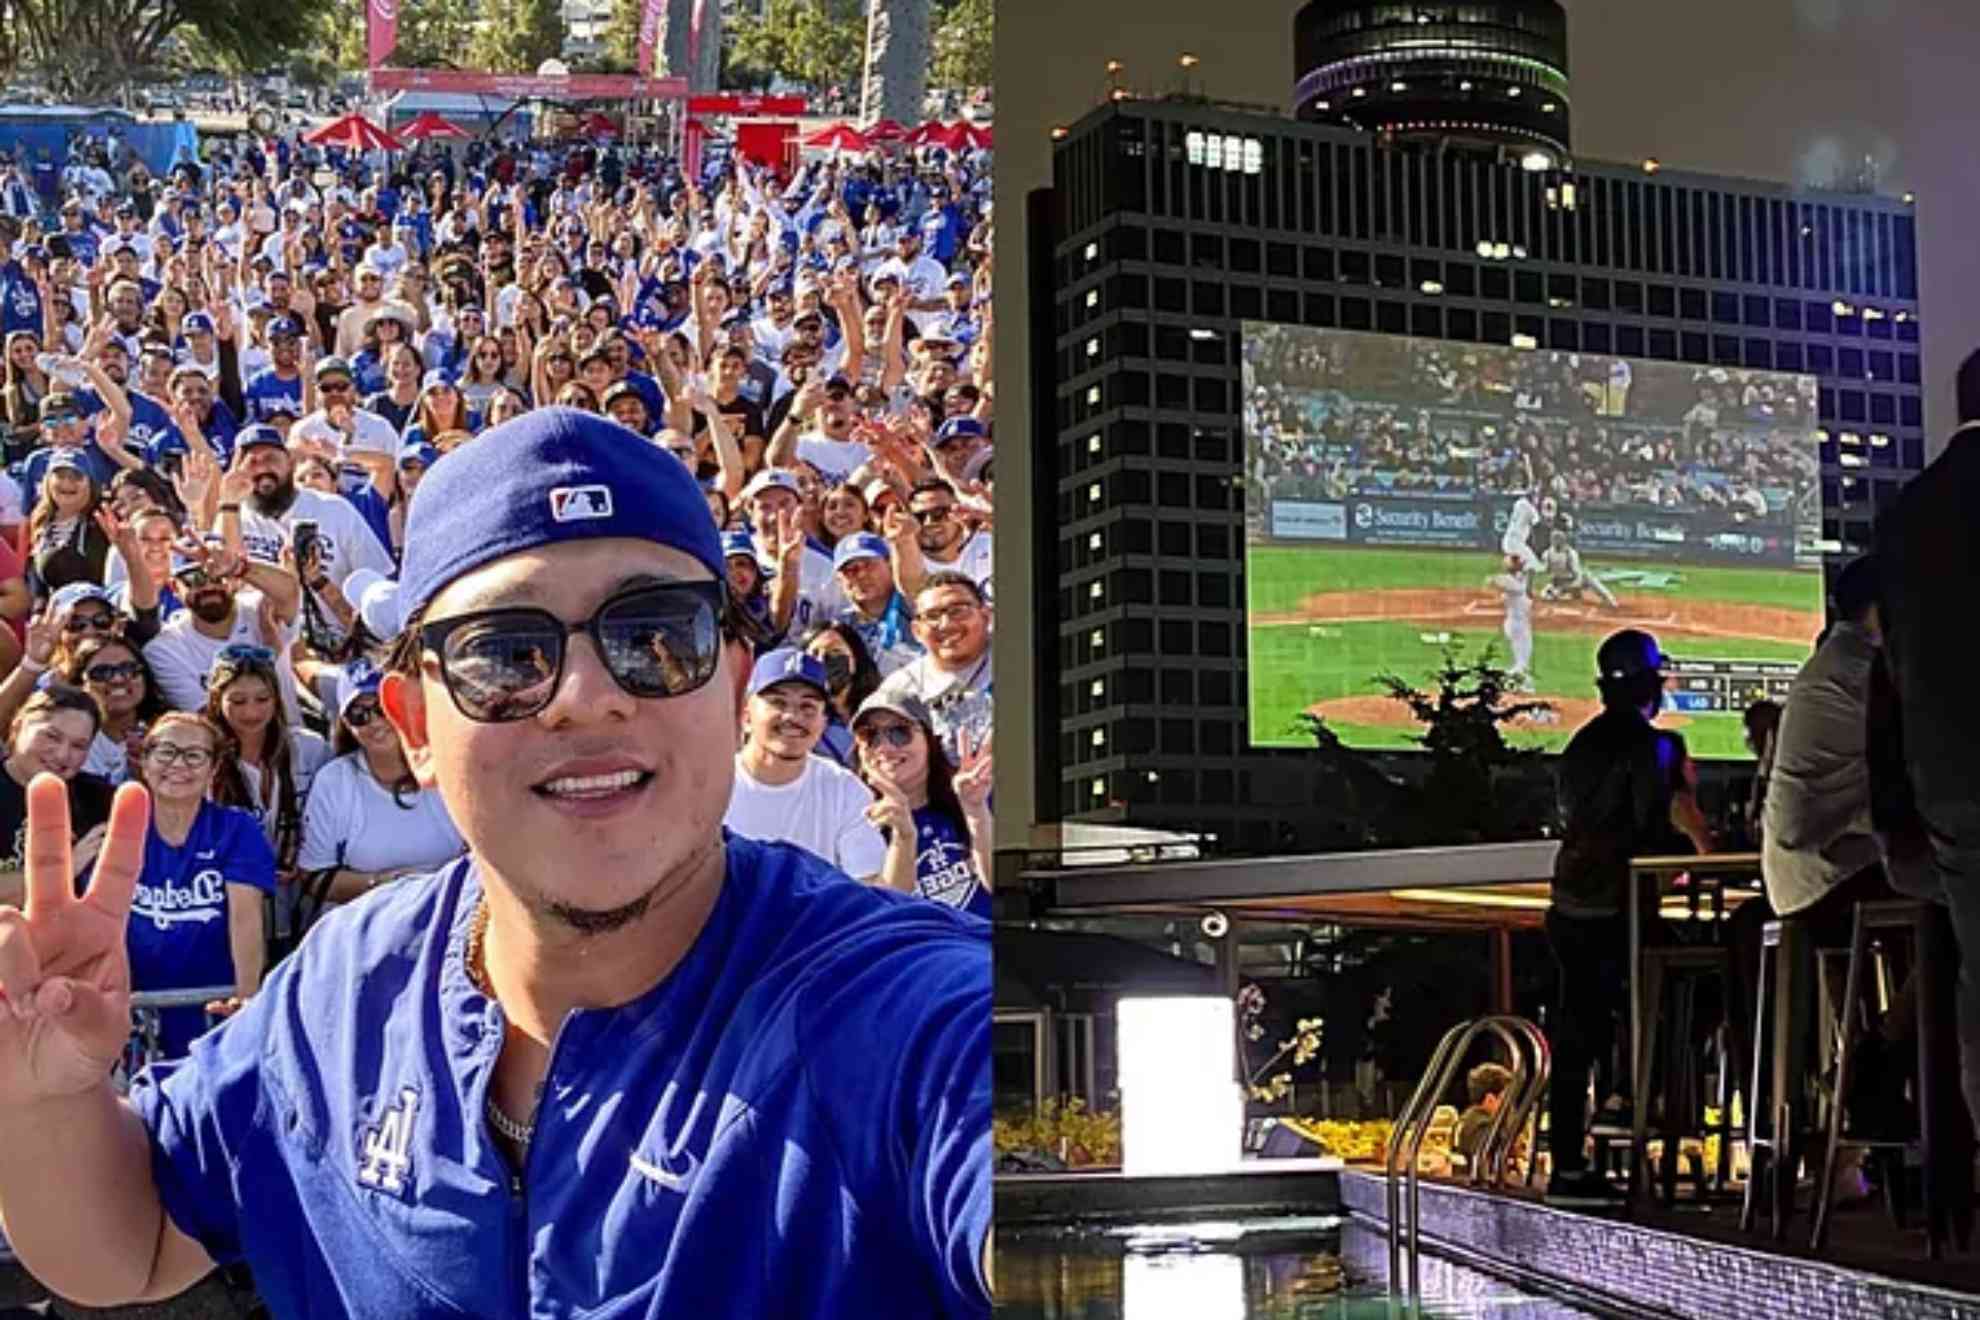 La población de la Ciudad de México pudo ver gratis el partido de los Dodgers en el Opening Day de la MLB.